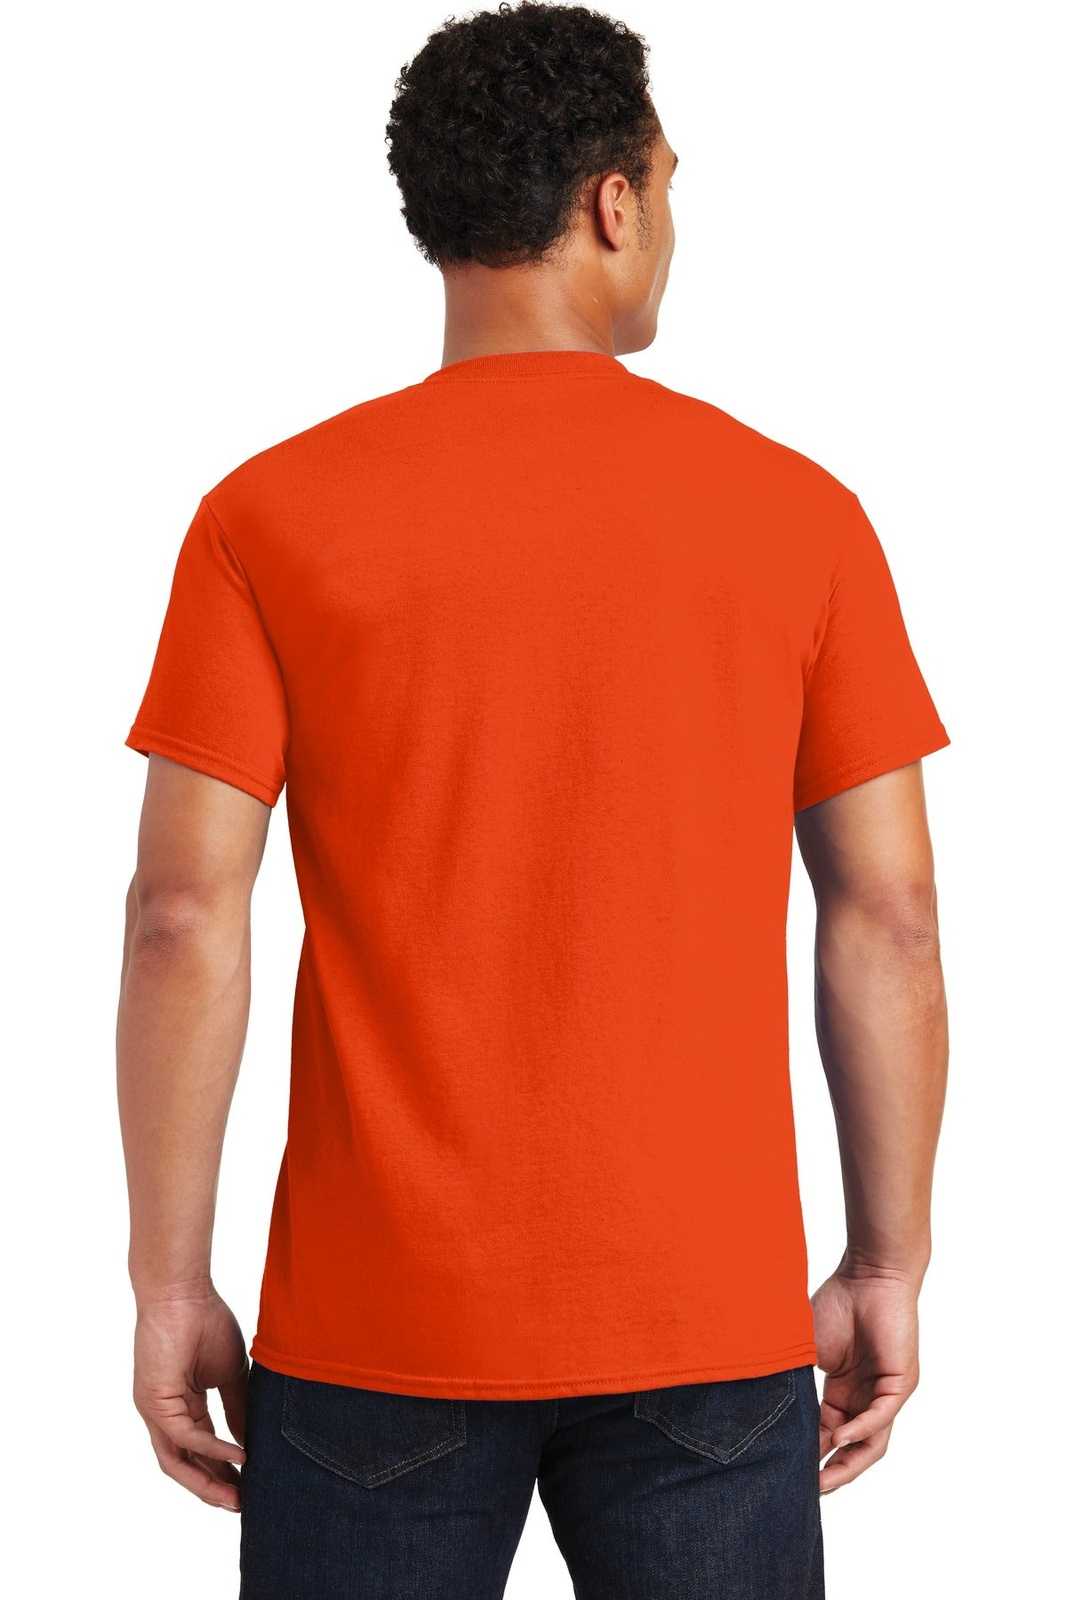 Gildan 2000 Ultra Cotton 100% Cotton T-Shirt - Orange - HIT a Double